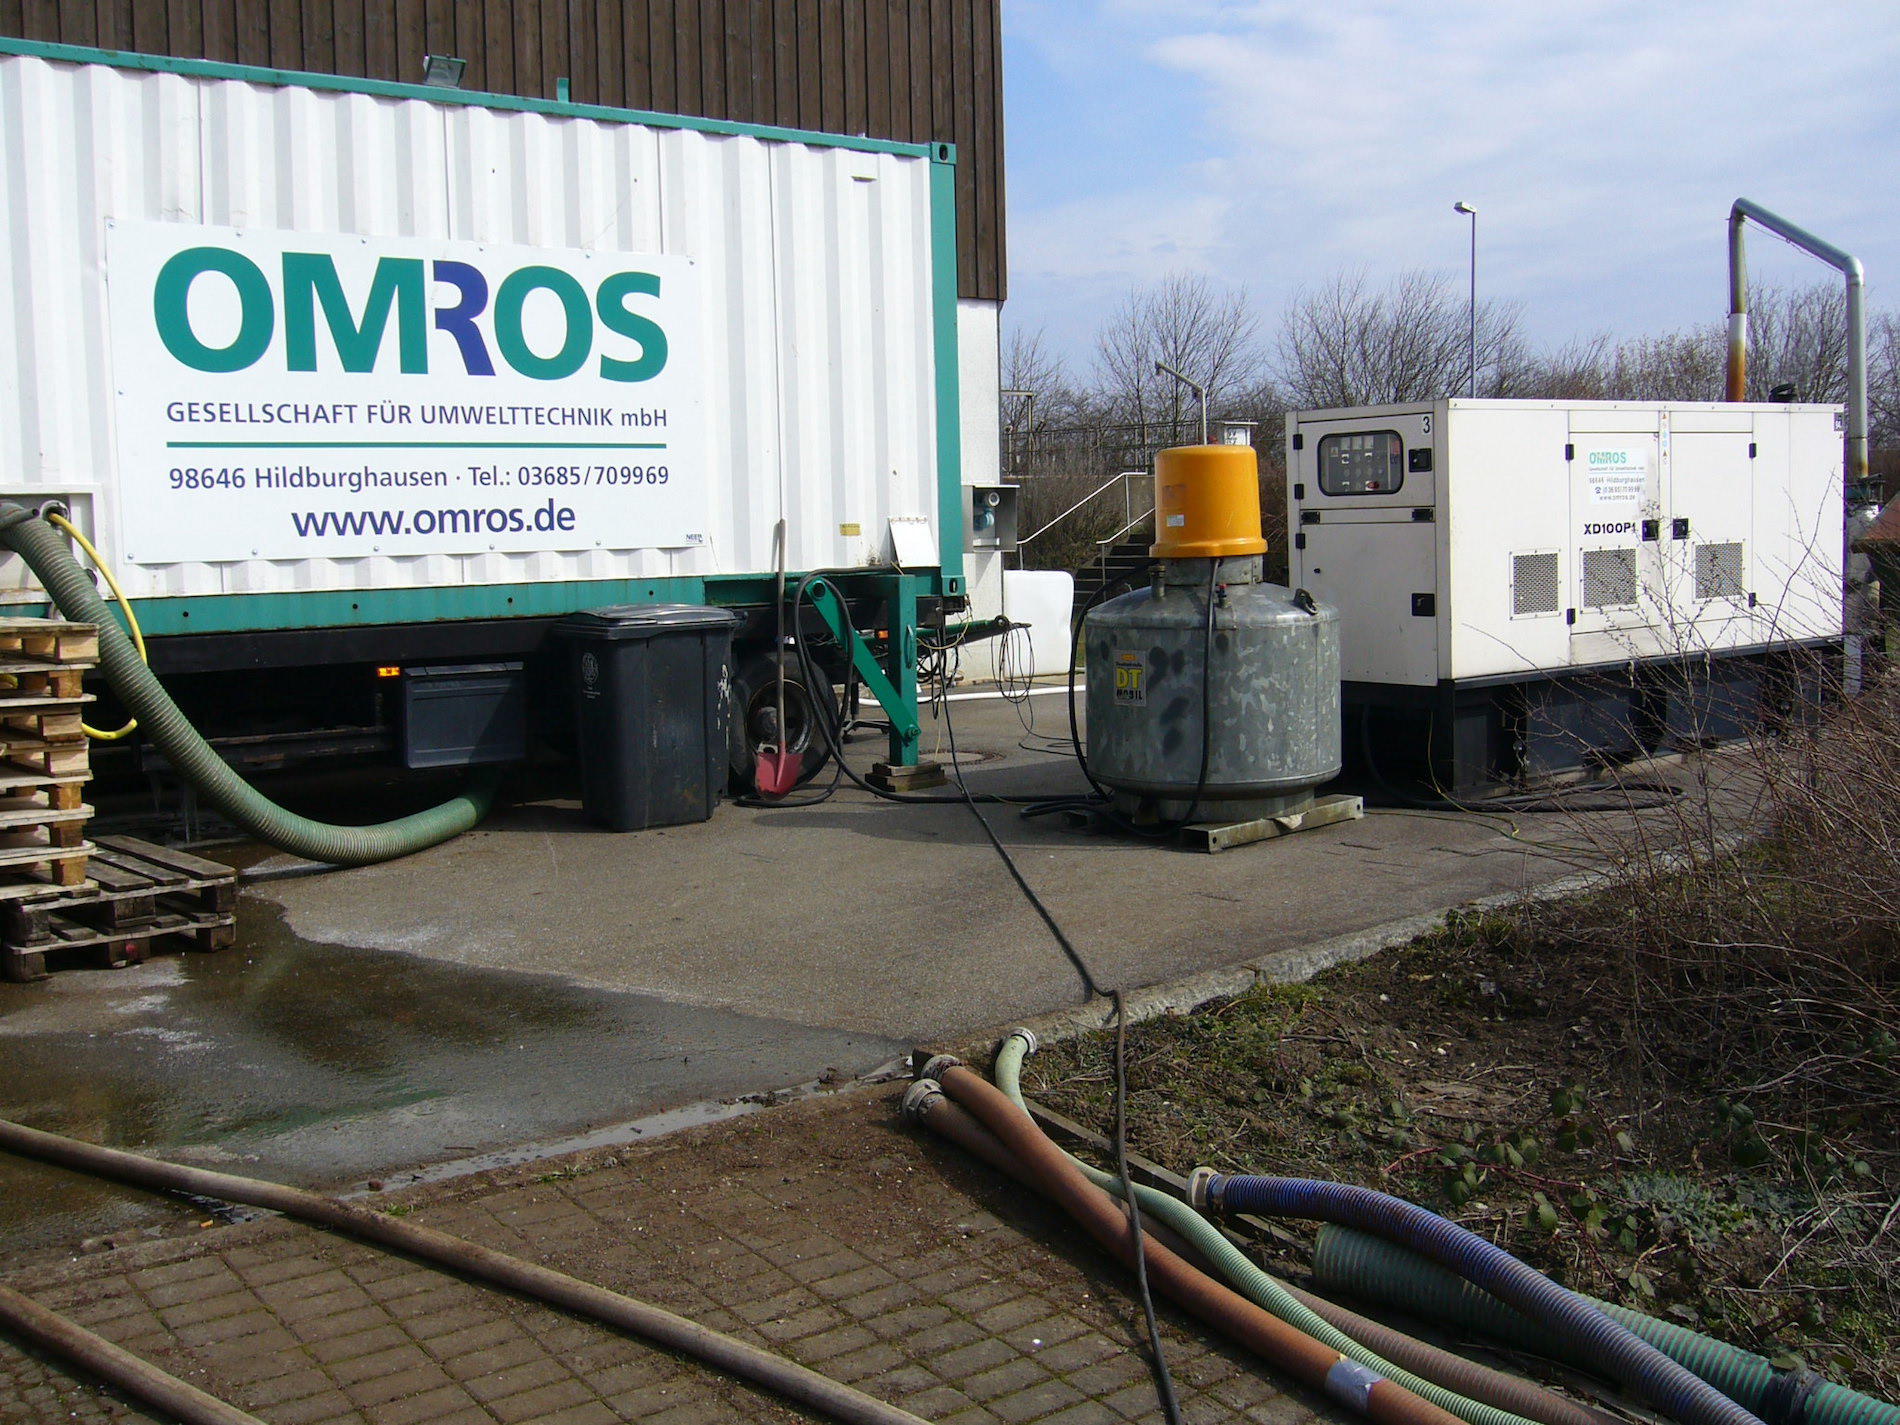 Mobile Klärschlammentwässerungsanlage mit Stromerzeugung, Omros Umweltservice GmbH aus Hildburghausen